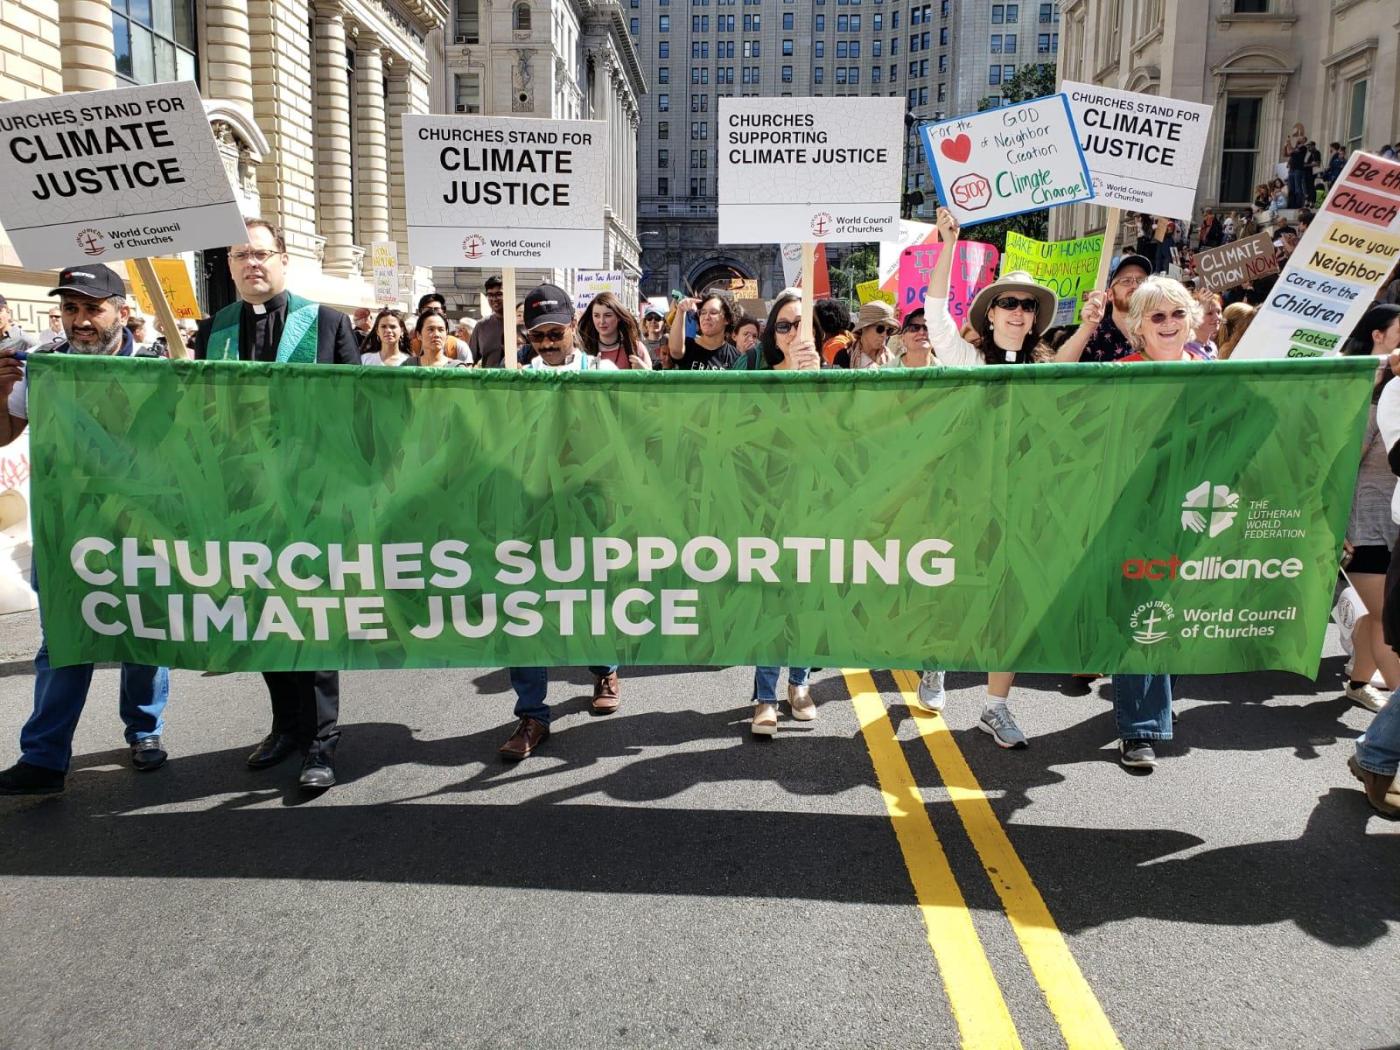 Les Églises appellent à une action immédiate en faveur de la justice climatique, à la veille du Sommet 2019 Action Climat des Nations Unies à New York. Photo: Joanna Patouris/ACT